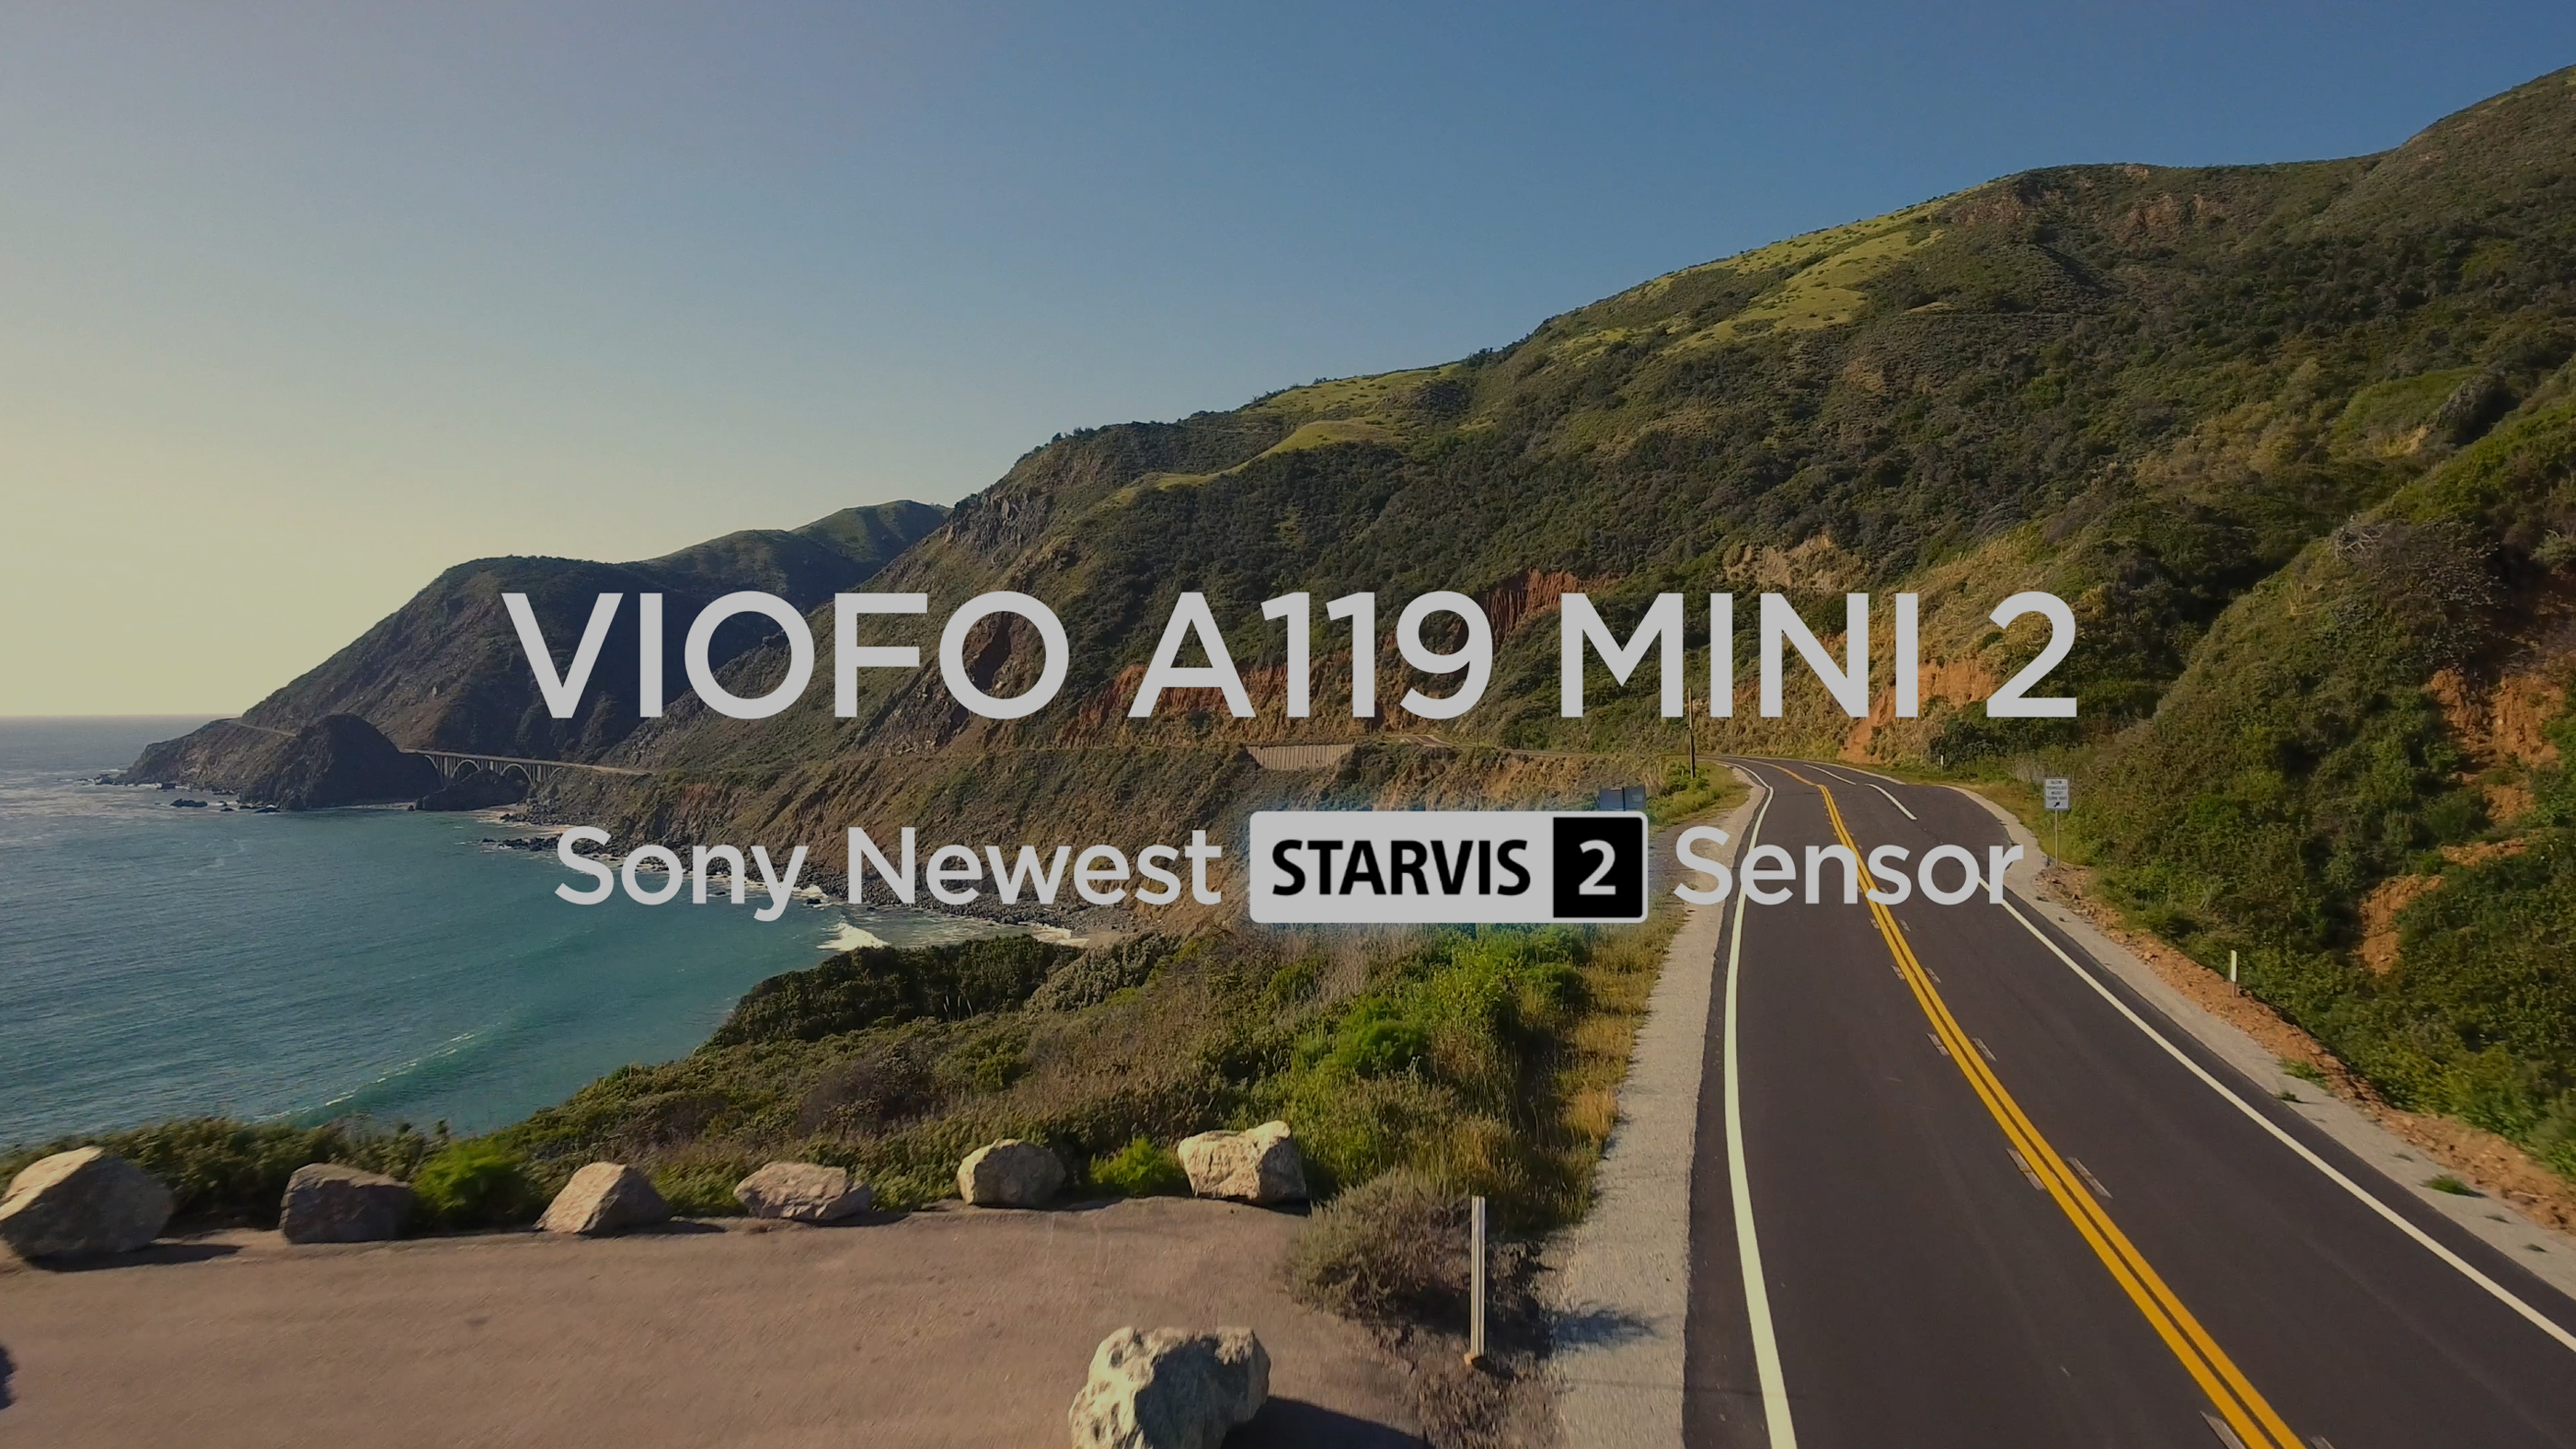 VIOFO A119 MINI-G REJESTRATOR 2,5K + 128GB + ACC A119 MINI za 735